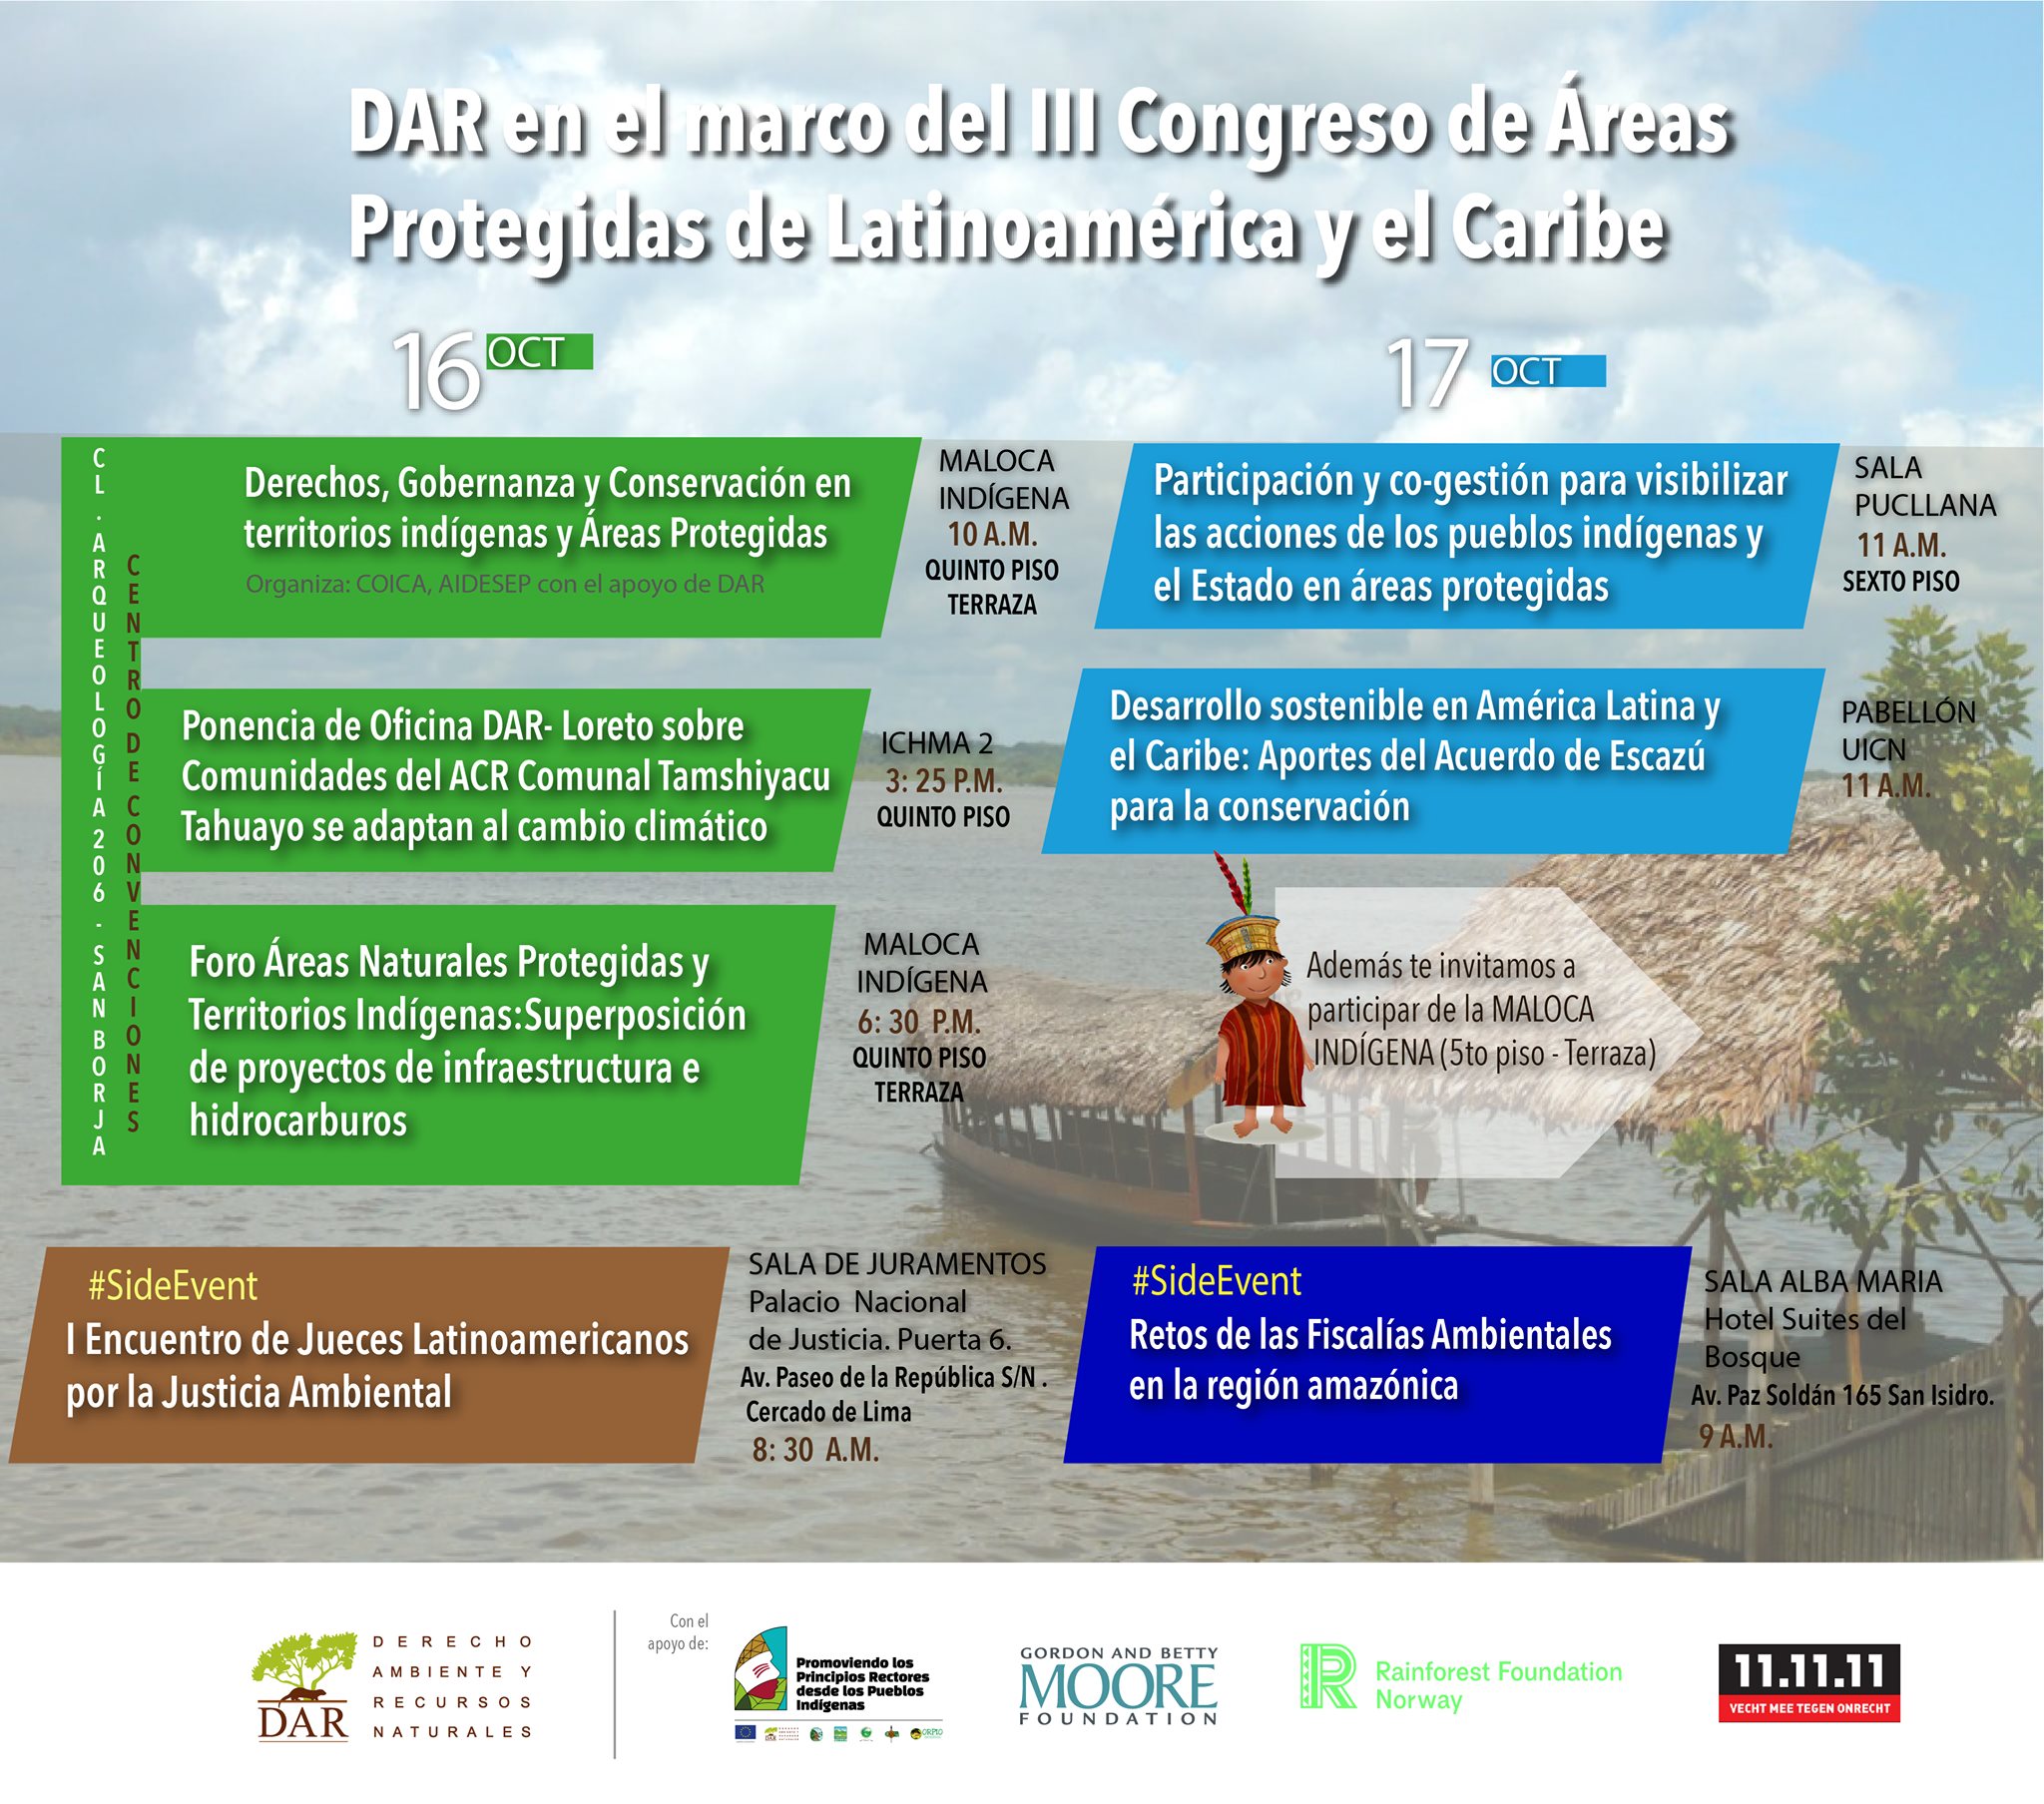 DAR participará en el III Congreso de Áreas Protegidas de Latinoamérica y el Caribe